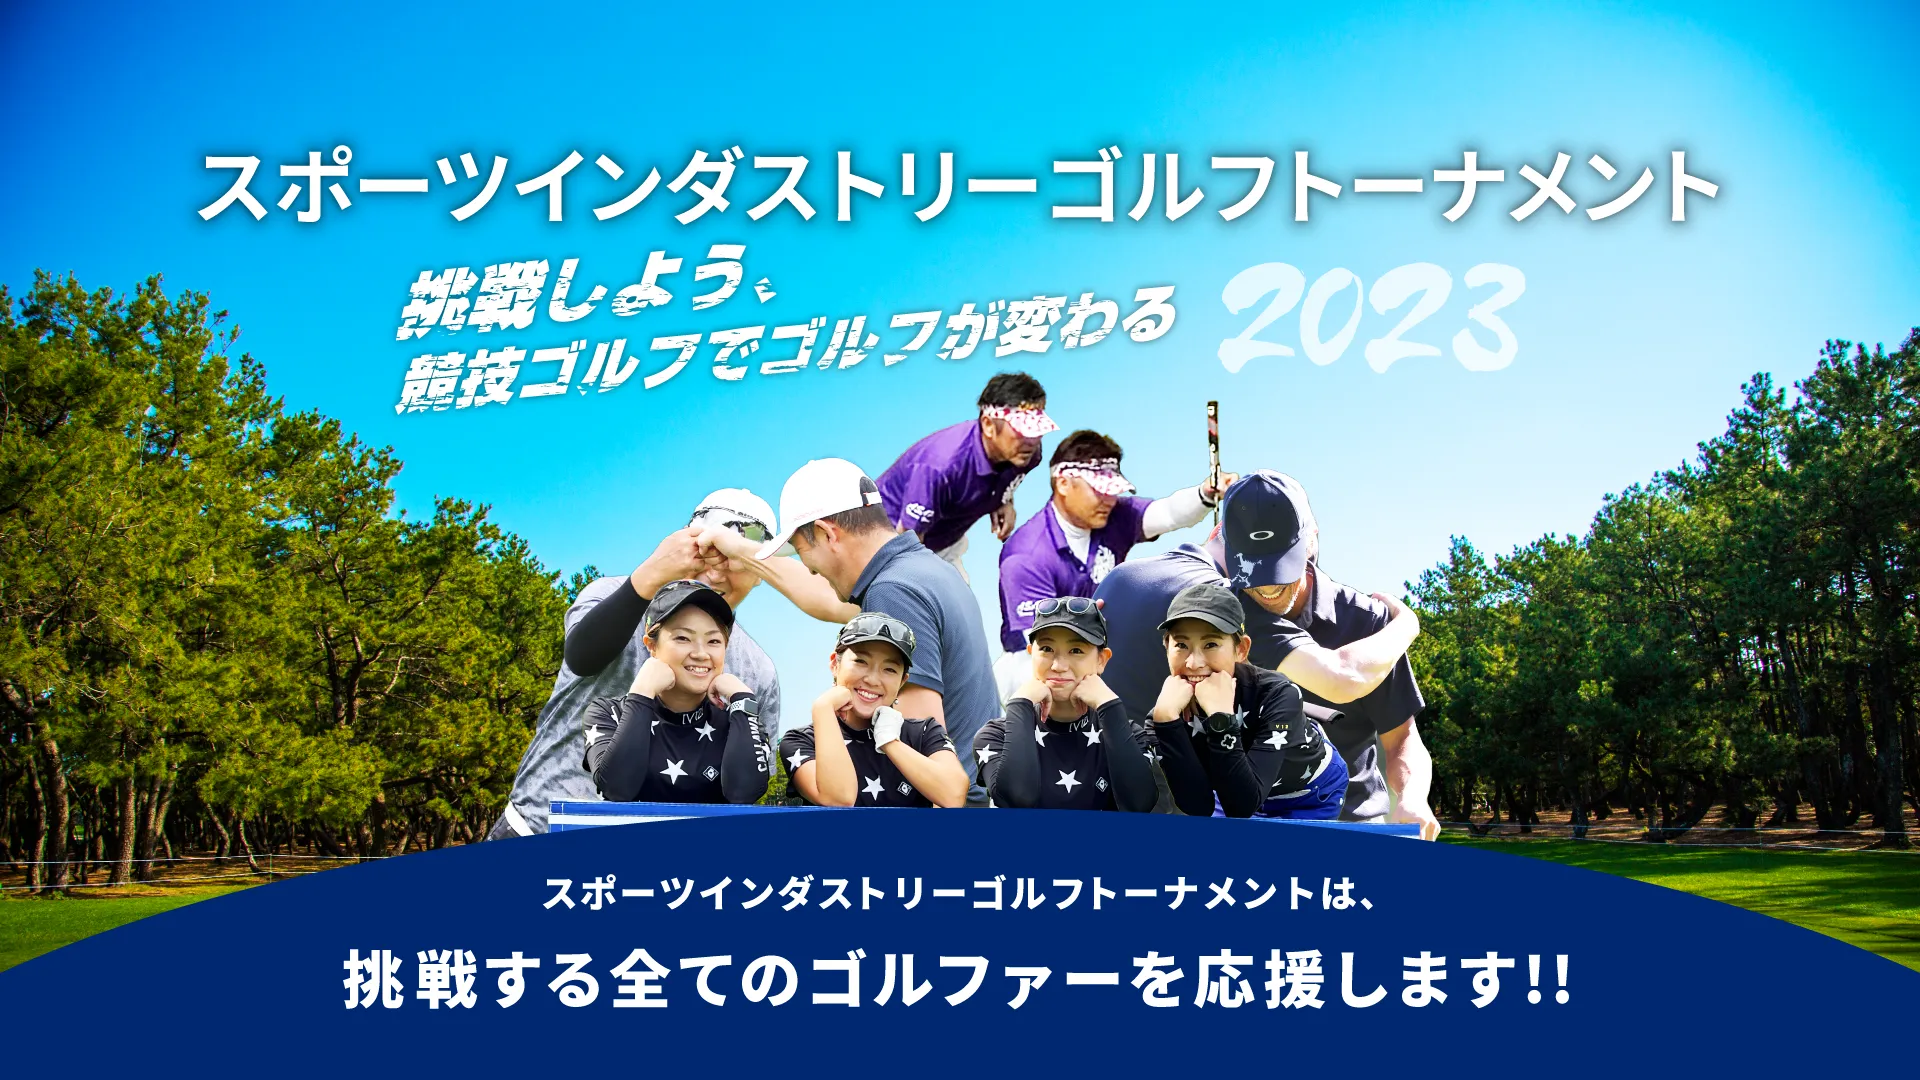 スポーツインダストリーゴルフトーナメント_SI_Golf_Tournament